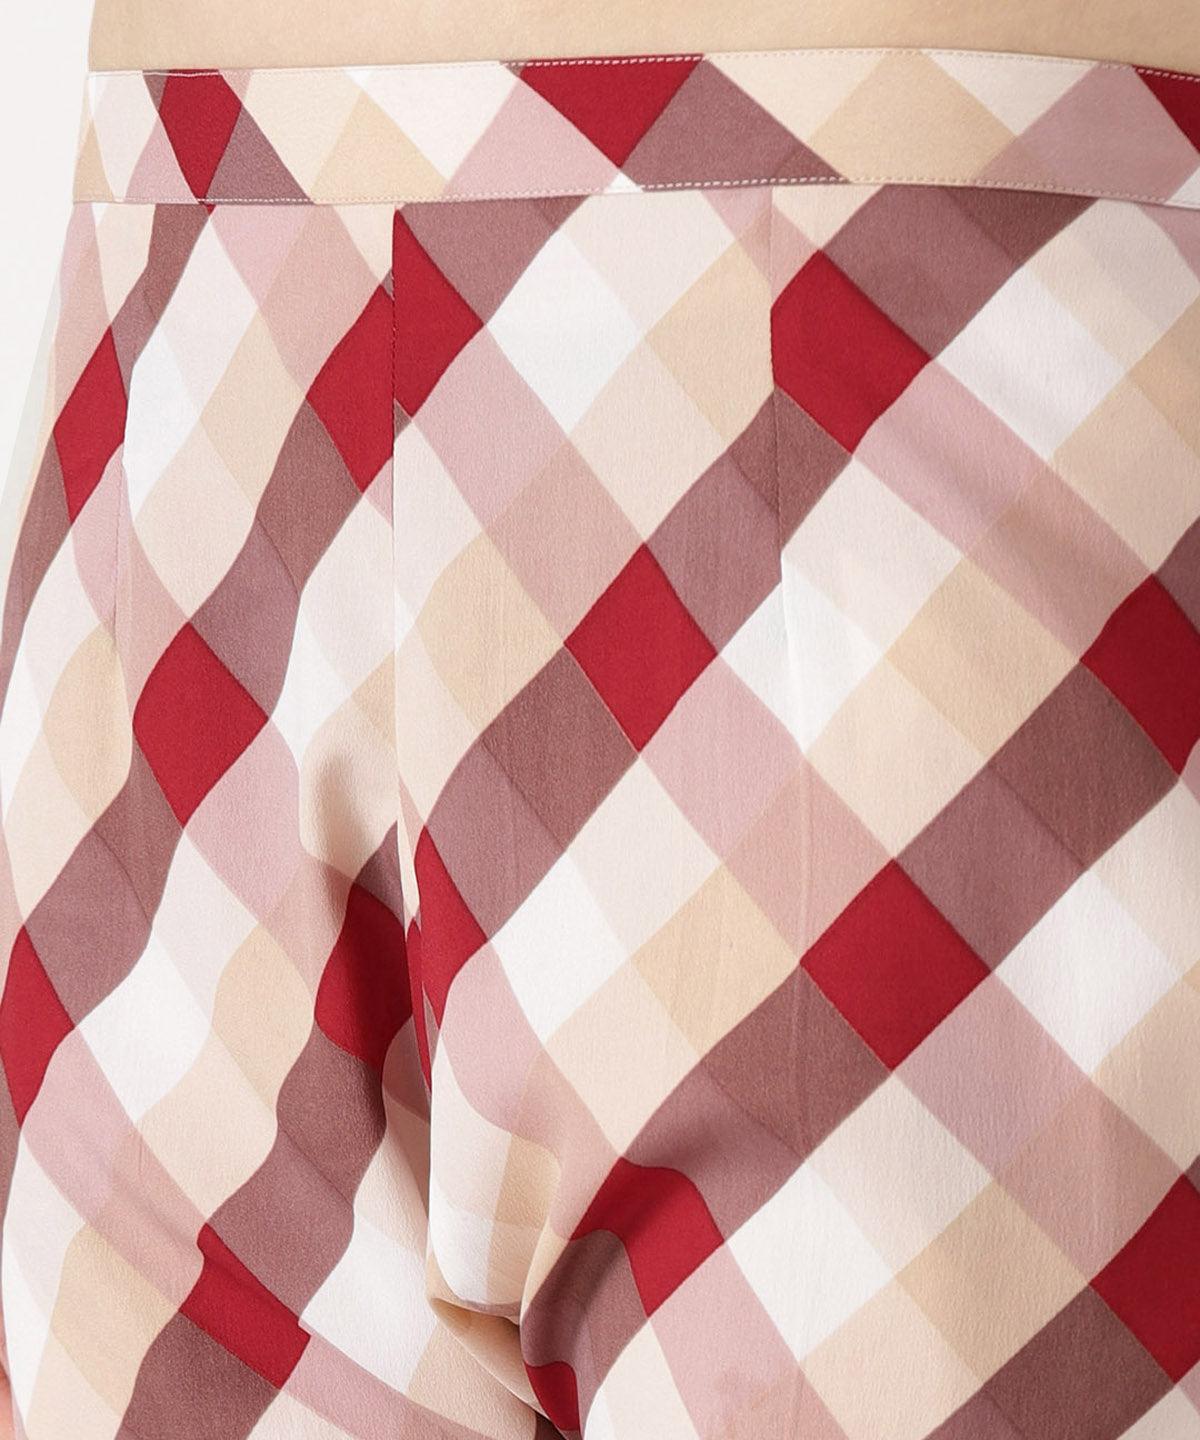 White Checkered Polyester Trousers - ShopLibas